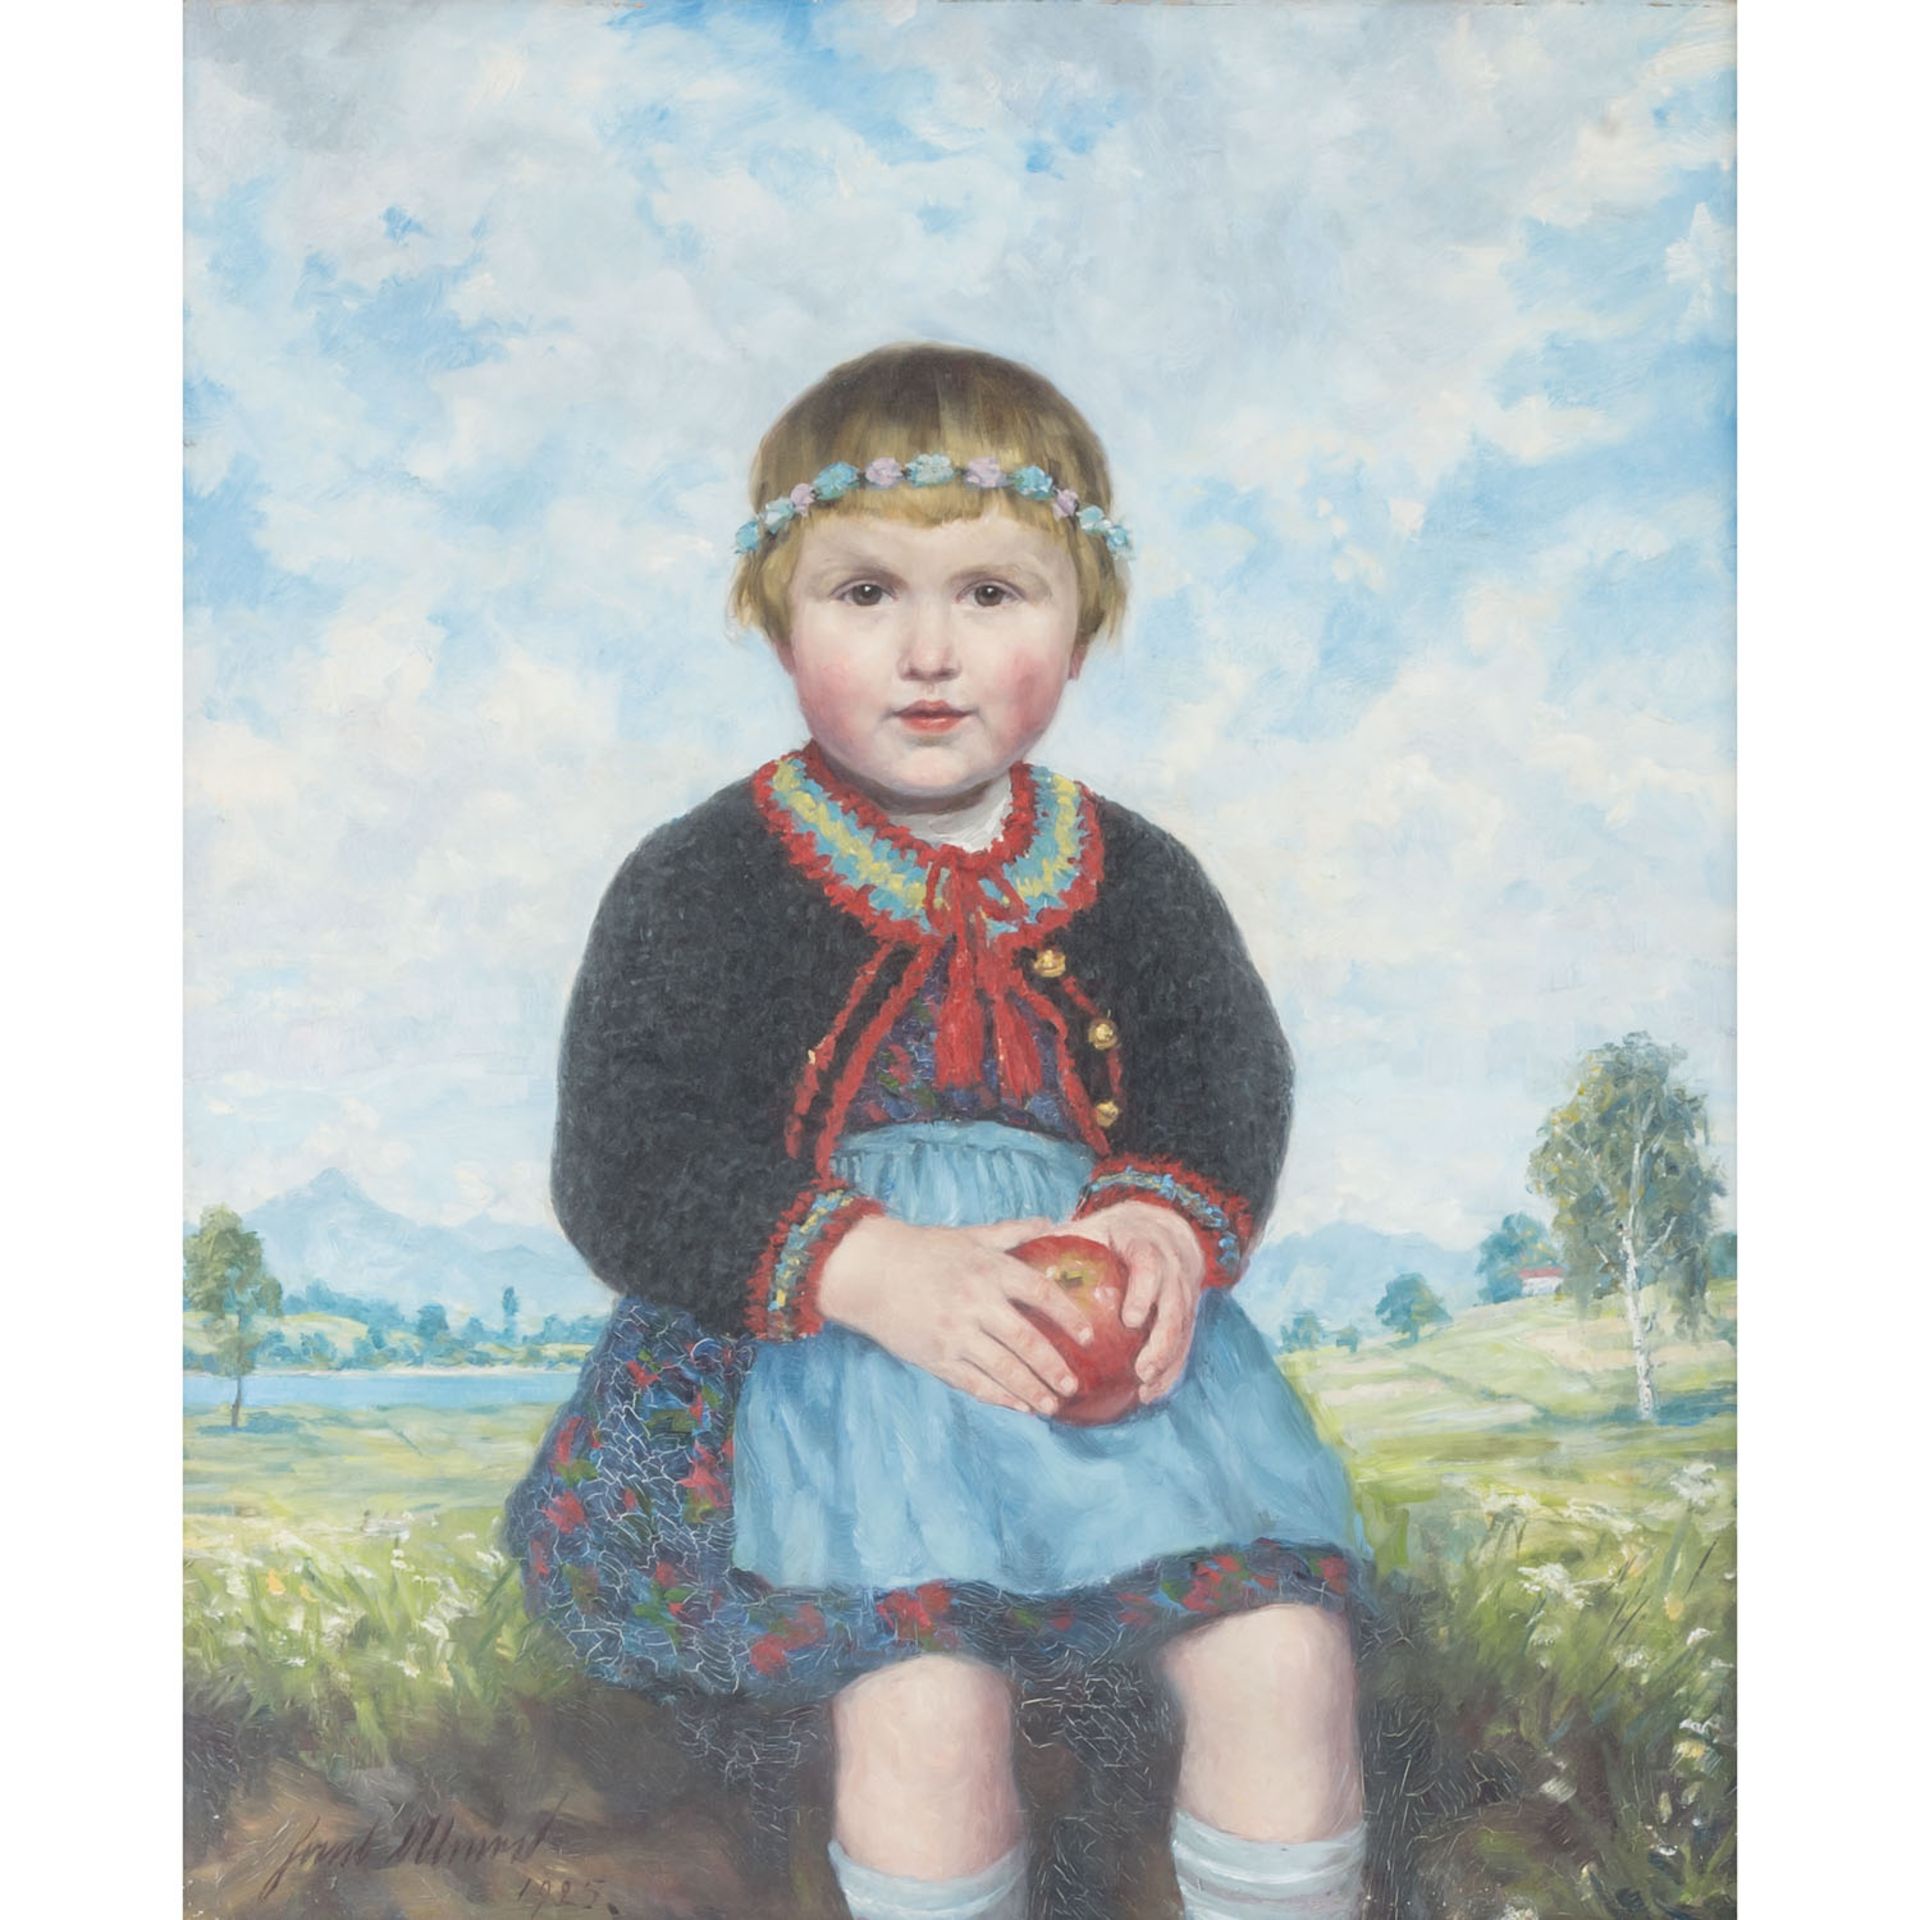 ULMER, HANS (1886-?) "Kleines Mädchen mit Blumenkranz" 1925